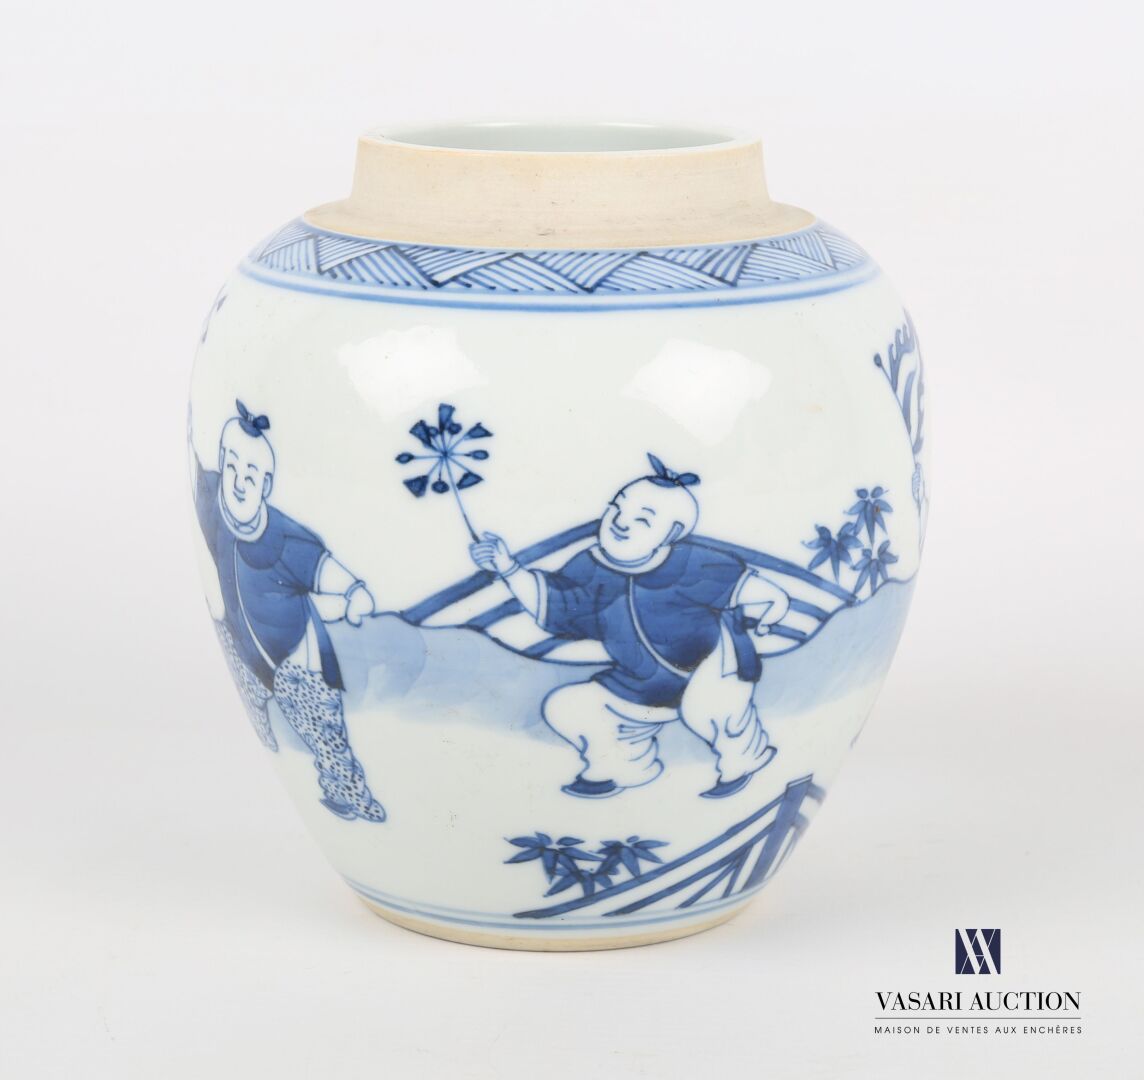 Null 中国
一个白/蓝瓷姜壶，上面有人物玩风的旋转装饰。颈部下摆有几何条纹图案的褶皱。 
20世纪
高度：13.5厘米13.5 cm - 宽度 : 12 c&hellip;